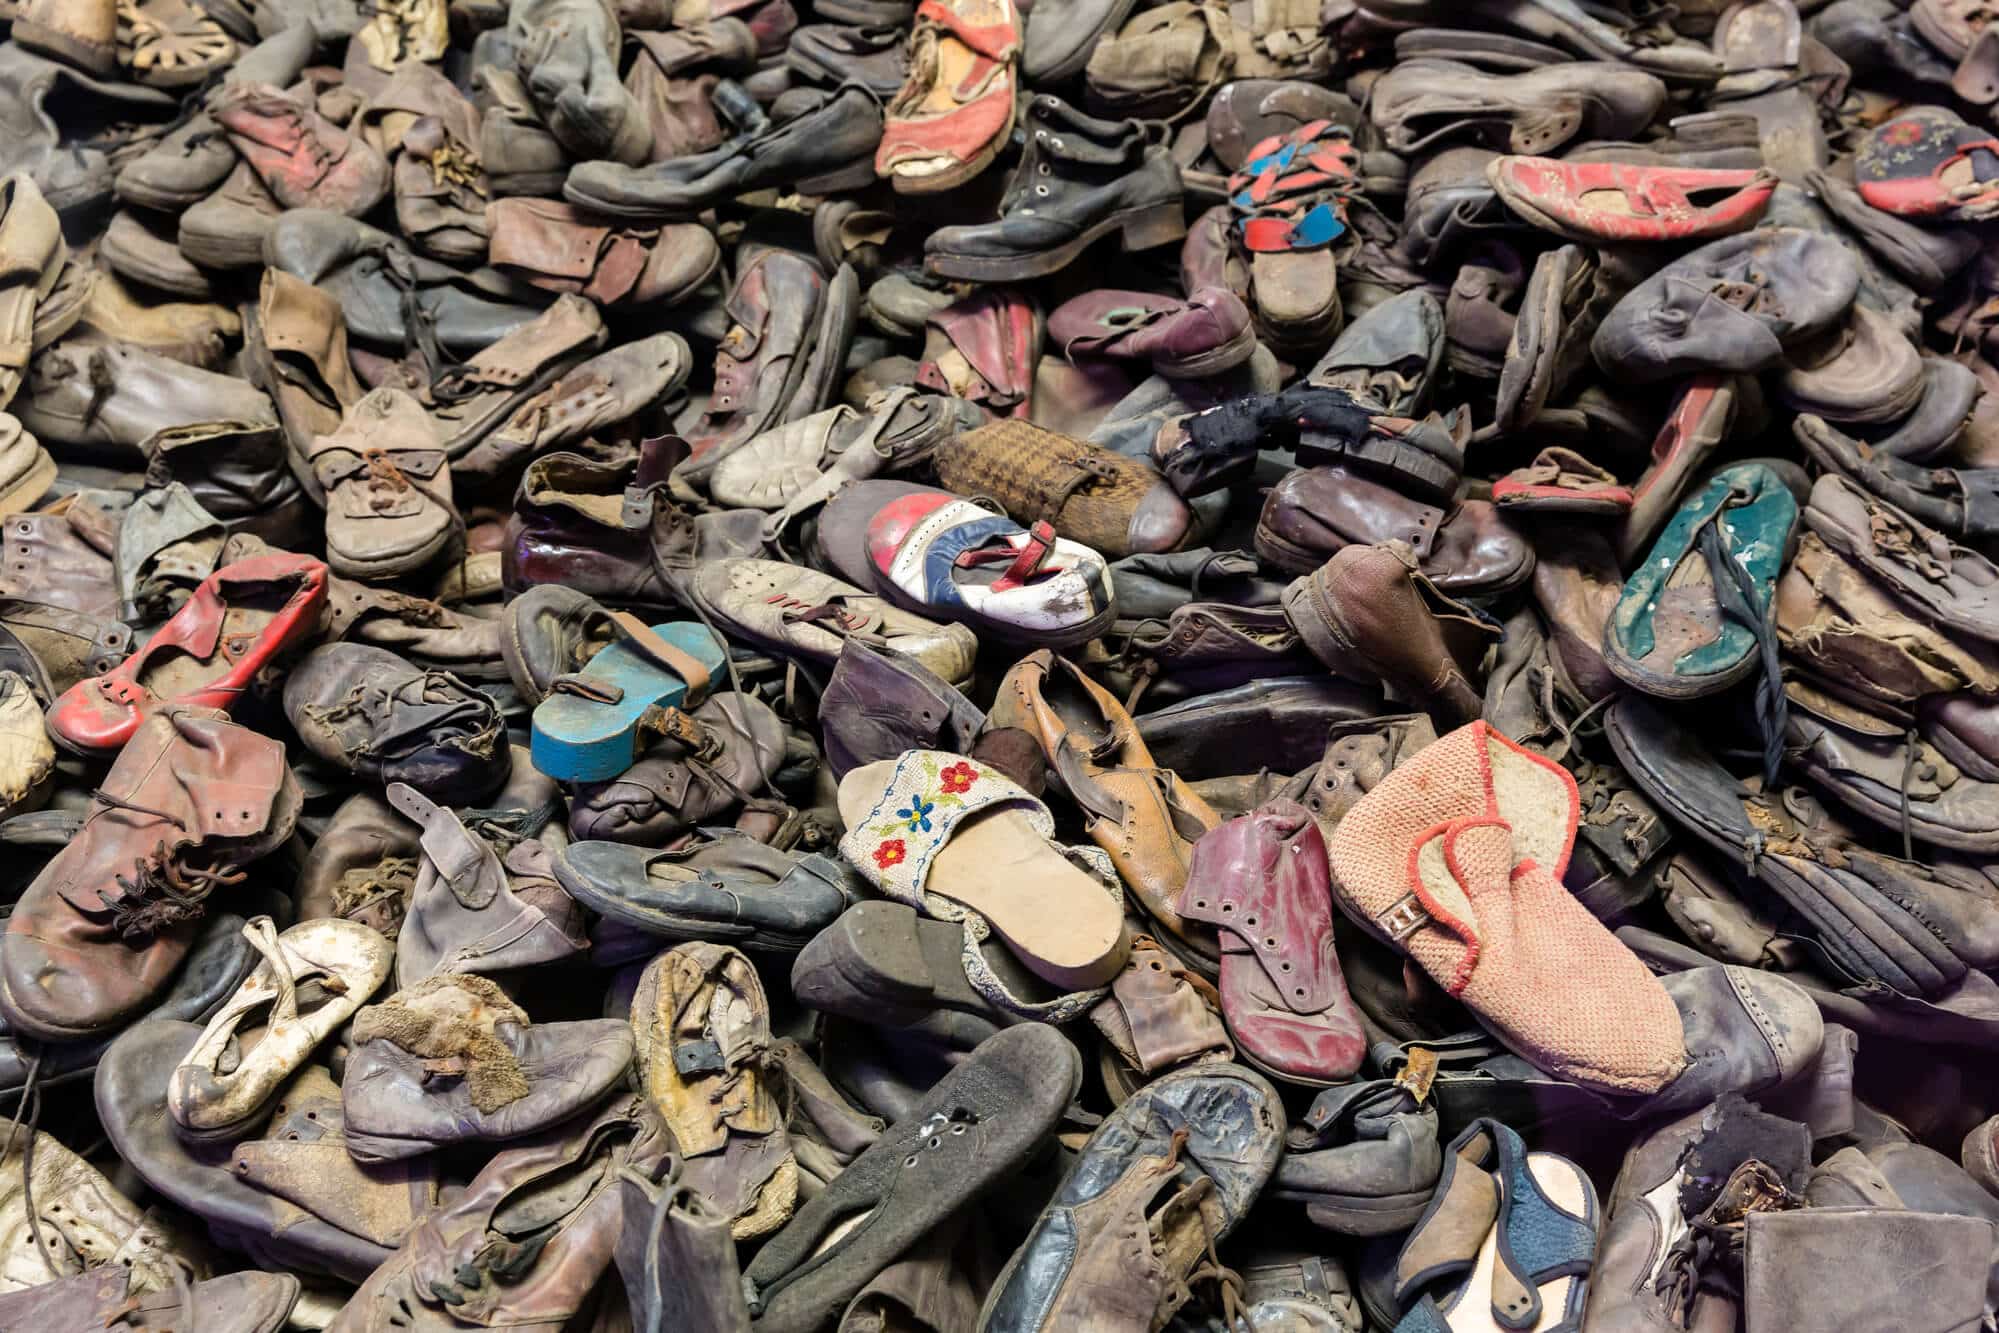 תצוגת הנעליים של קורבנות השואה שנרצחו באושוויץ - בירקנאו. <a href="https://depositphotos.com. ">המחשה: depositphotos.com</a>